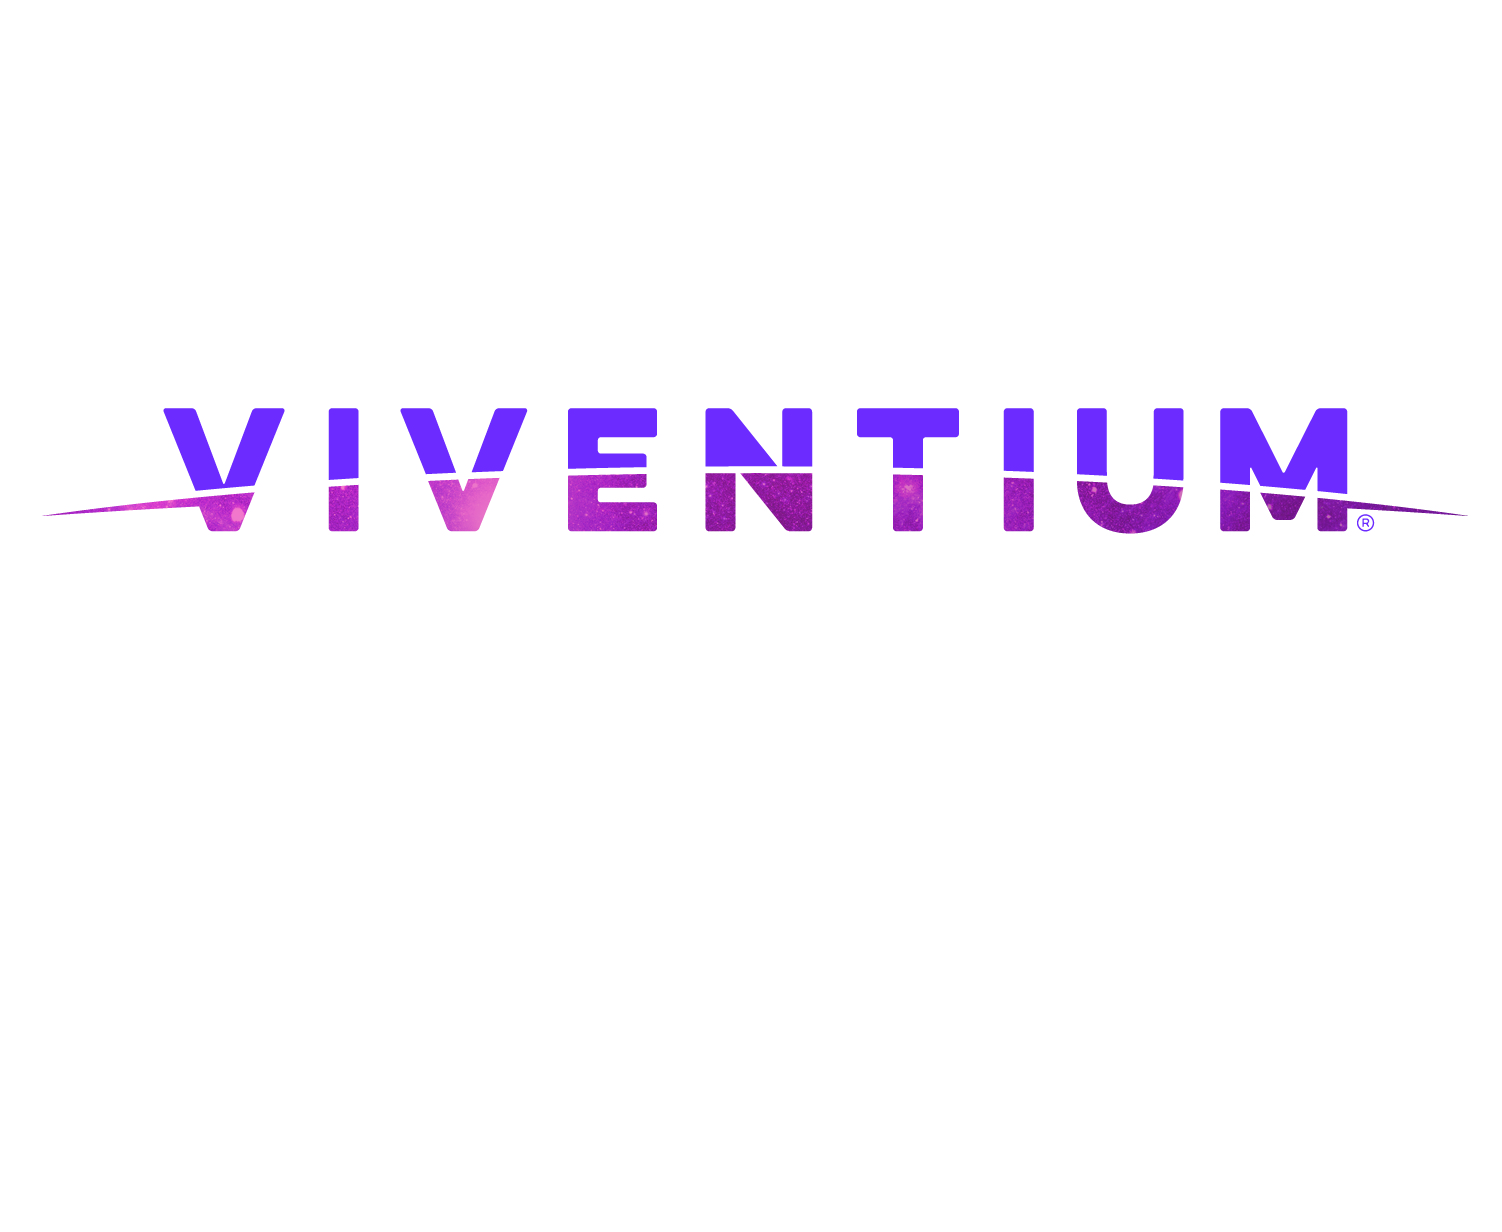 Viventium Named in C